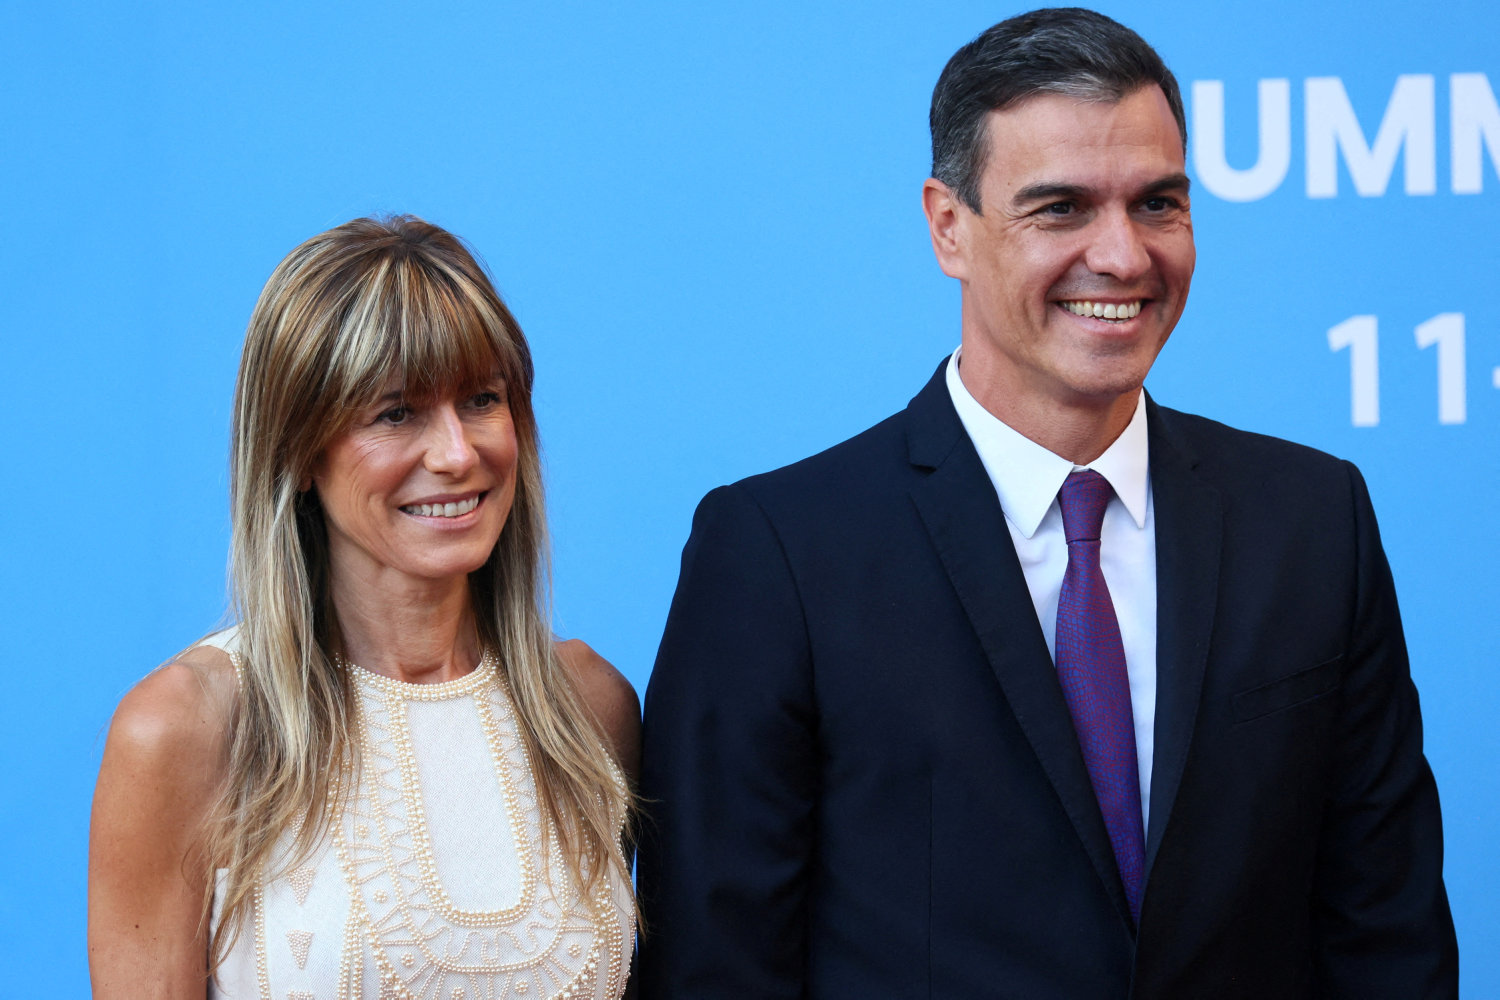 hustru til spansk premierminister mistænkes for korruption